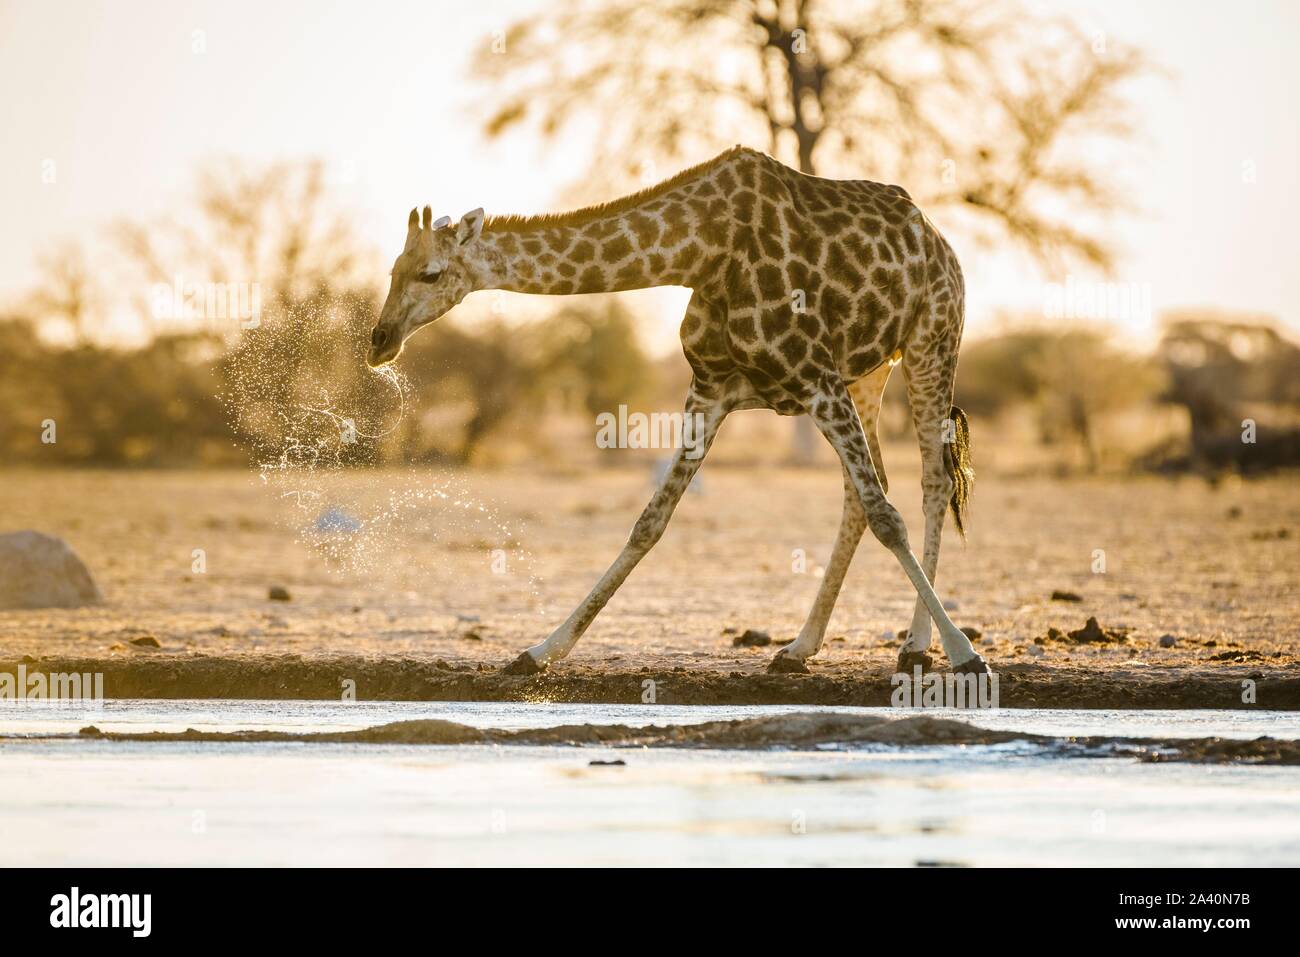 Angolan Giraffe (Giraffa camelopardalis angolensis) drinking at a waterhole, Nxai Pan National Park, Ngamiland, Botswana Stock Photo